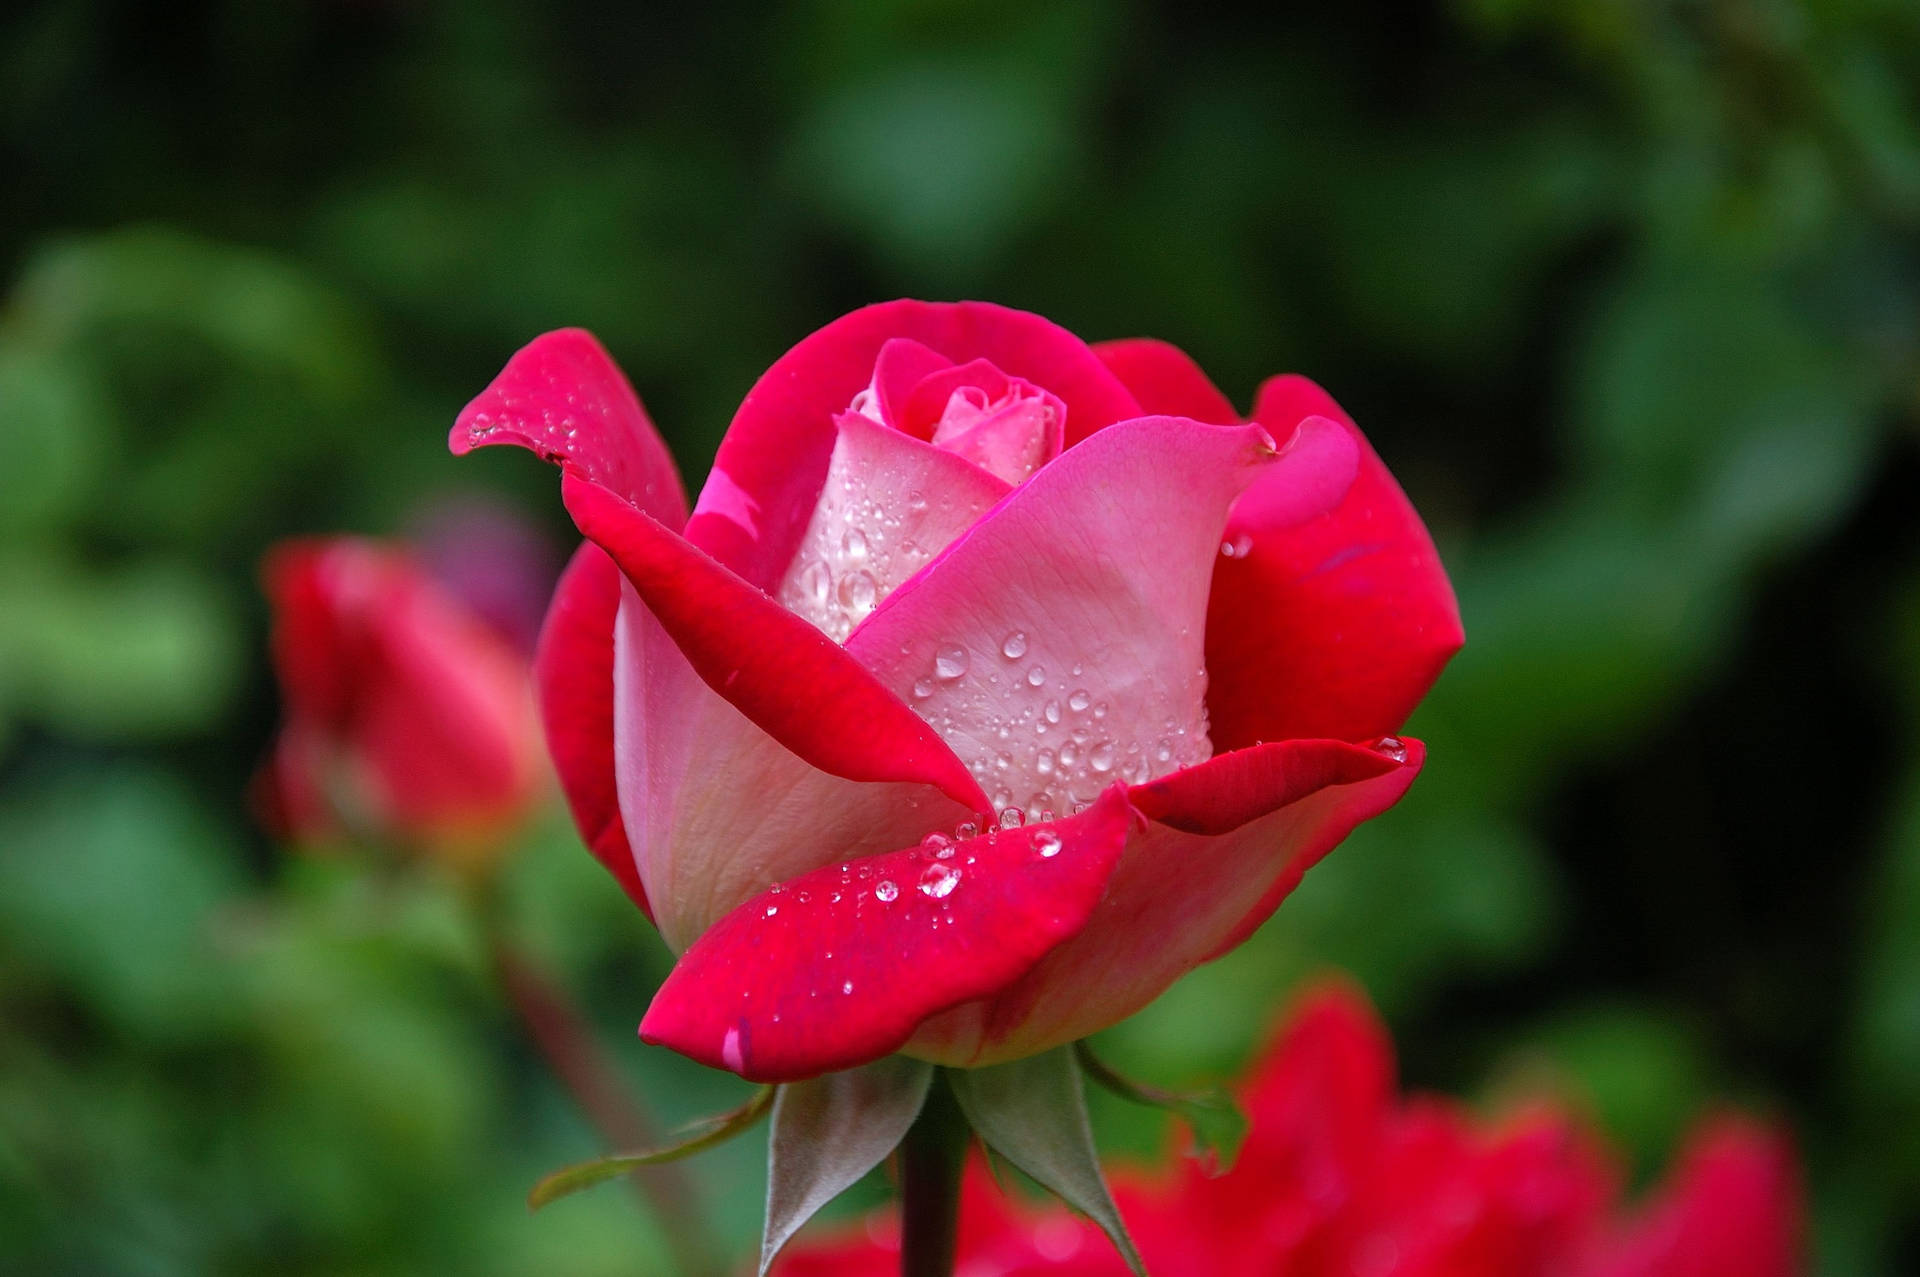 Divine Design Of Roses